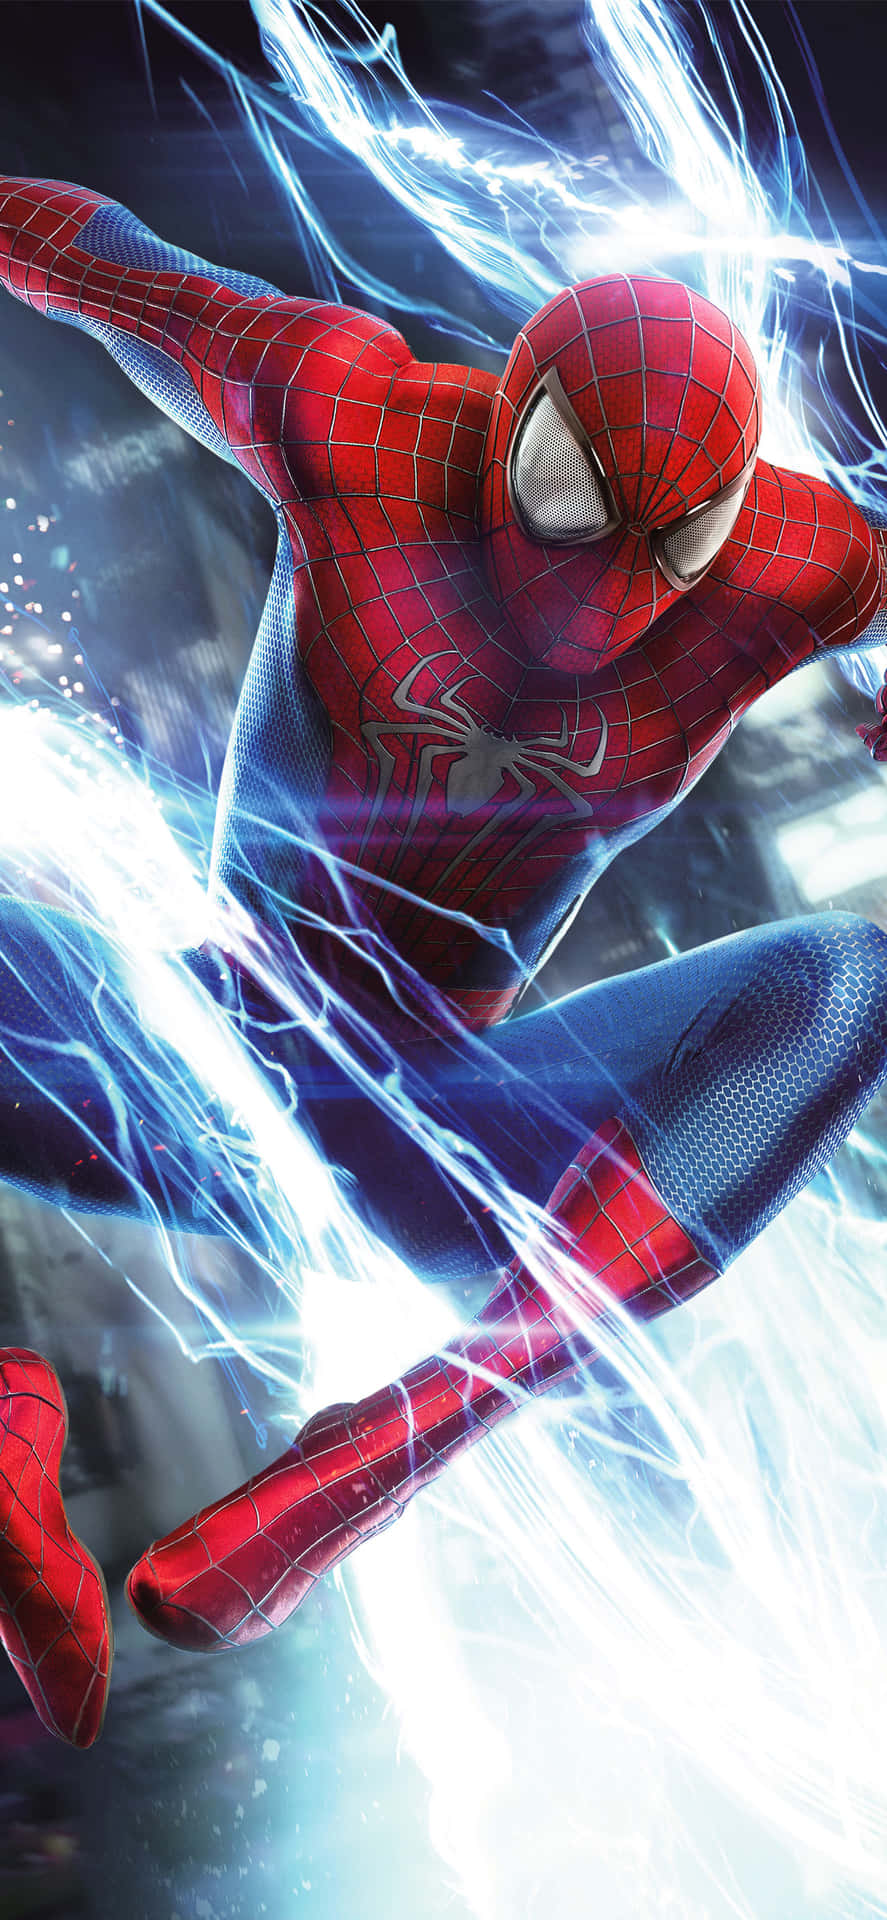 Entfesseledie Kraft Des Erstaunlichen Spider Man Auf Deinem Iphone! Wallpaper